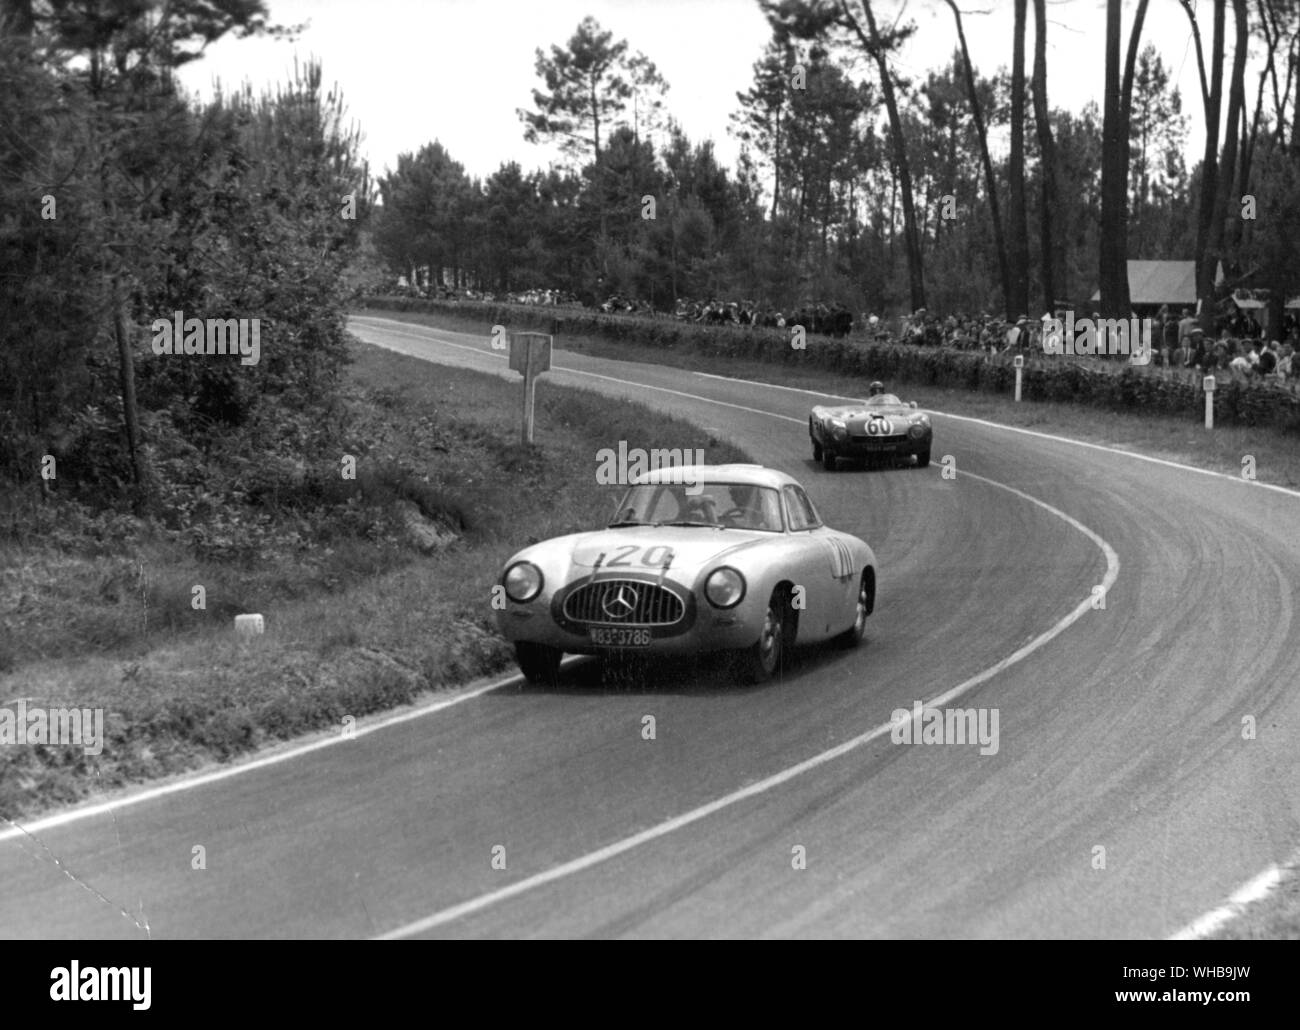 L'équipe allemande Mercedes-Benz 300 SL concurrent voiture lors des 24 heures Le Mans Endurance course en avant du moteur sur le coin du monopole français voiture Panhard X84. 14 Juin 1952 Banque D'Images